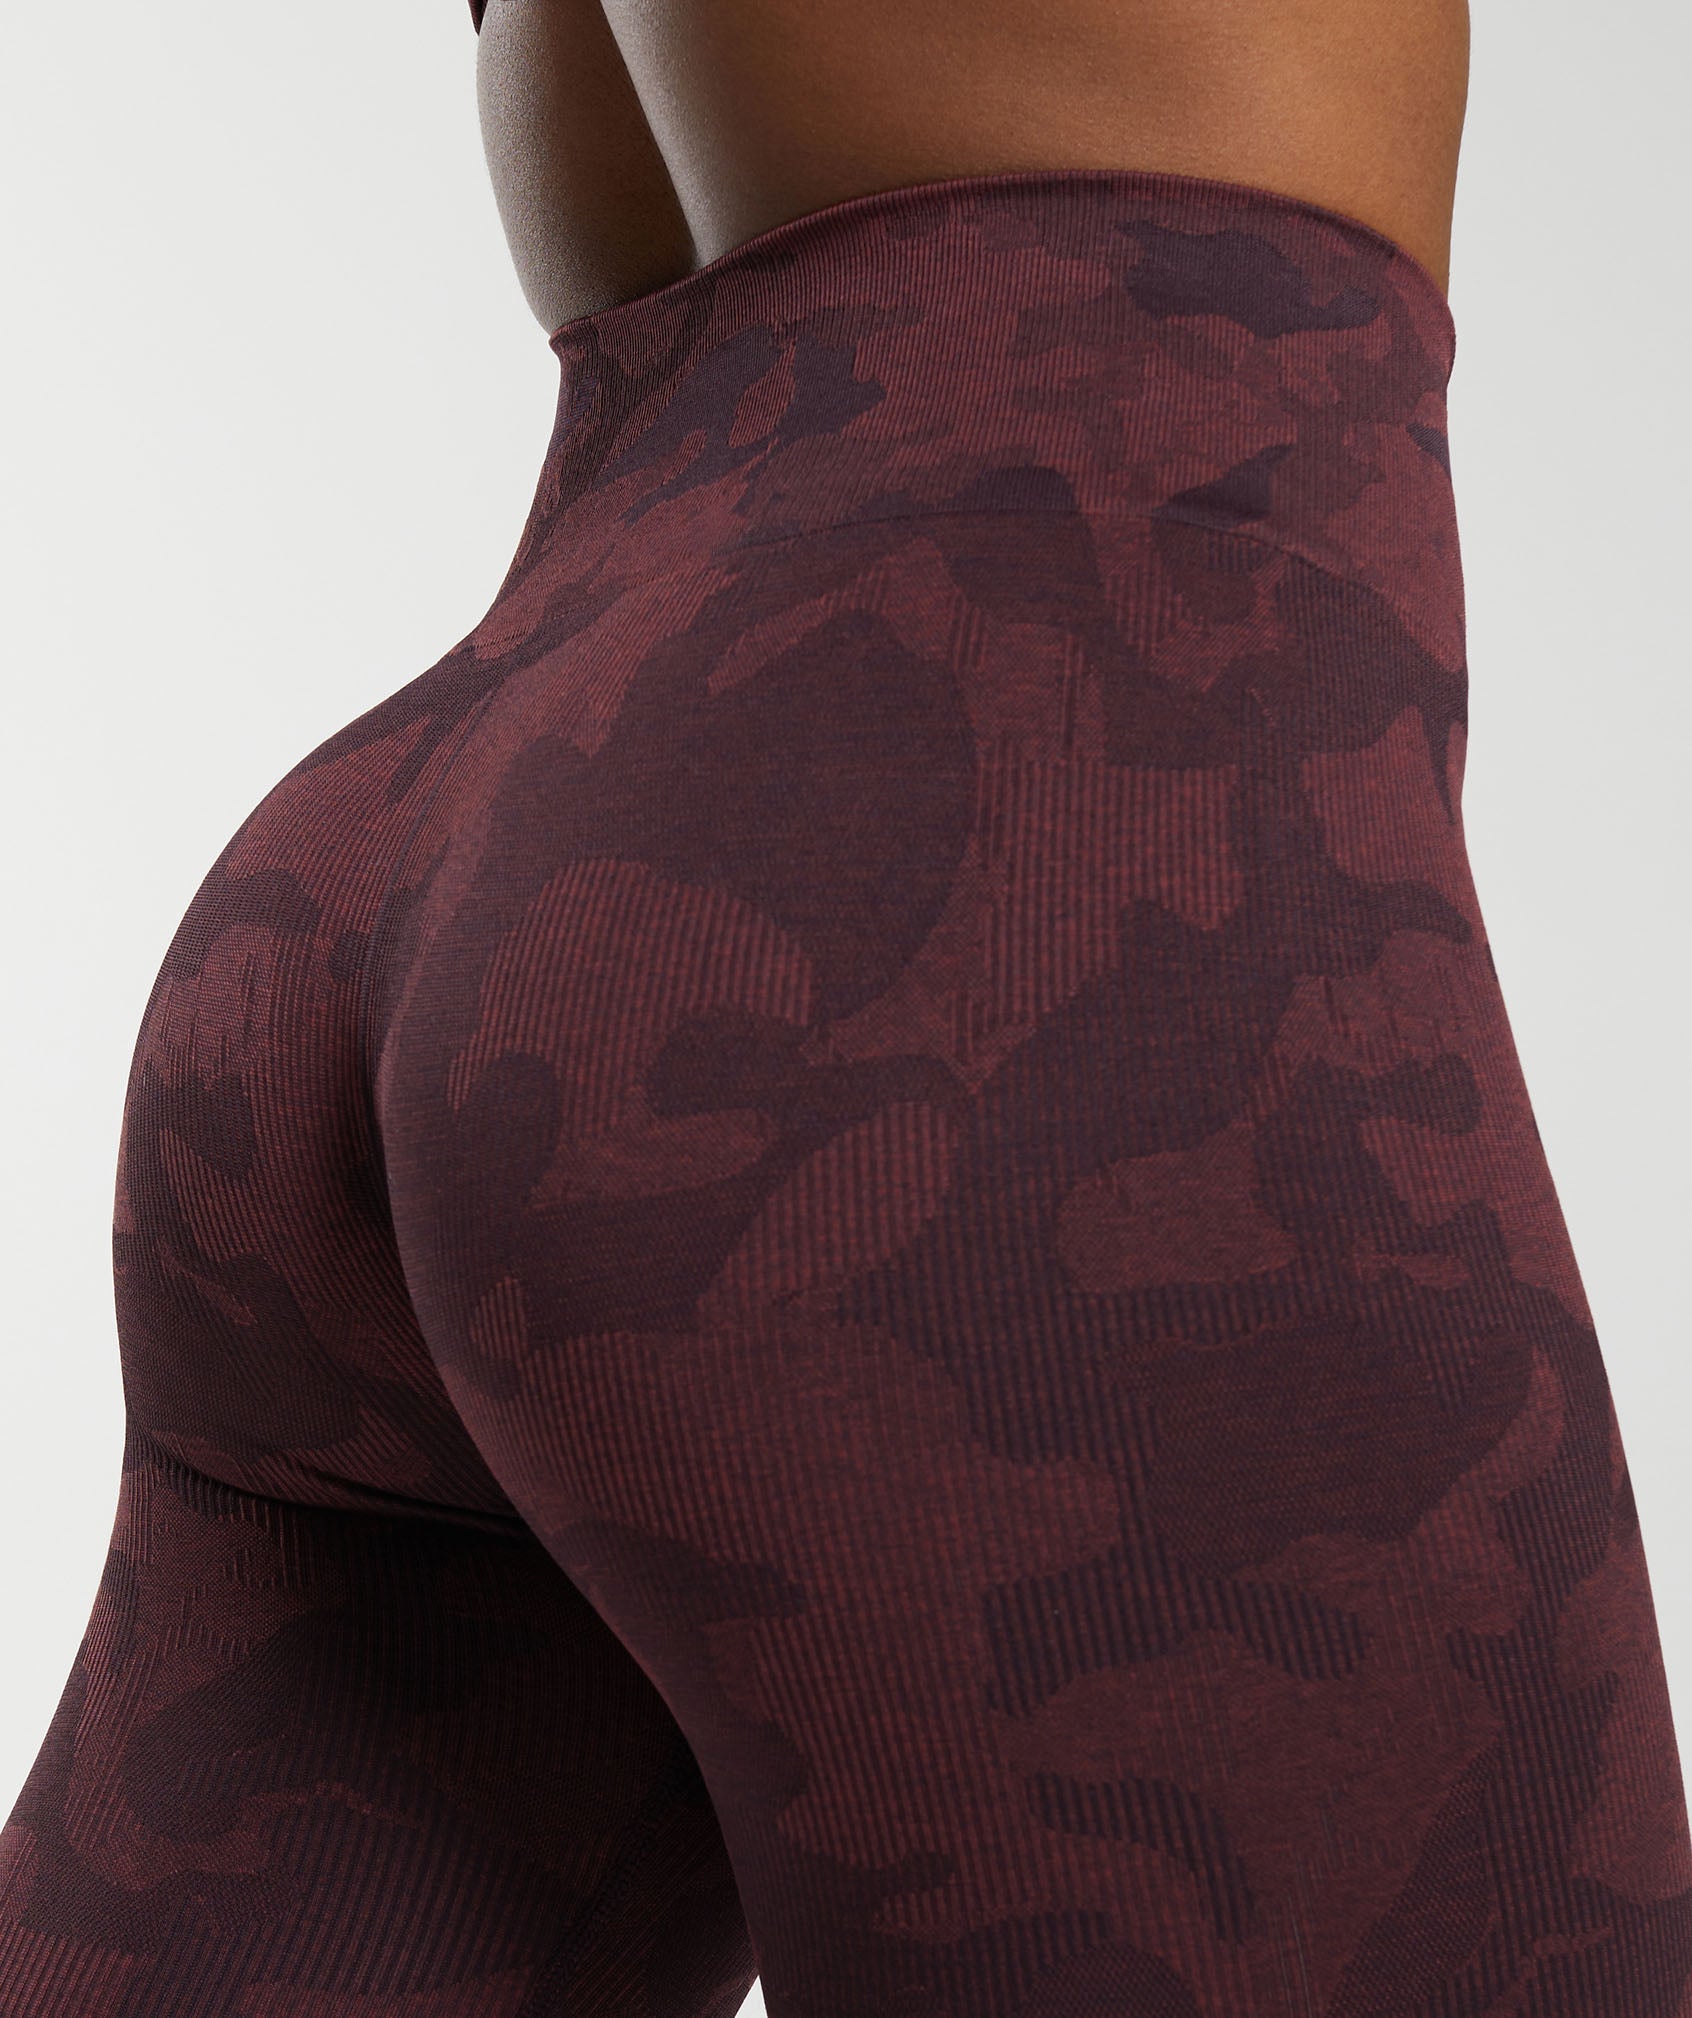 Gym Shark - Gymshark Camo Seamless Leggings - S on Designer Wardrobe